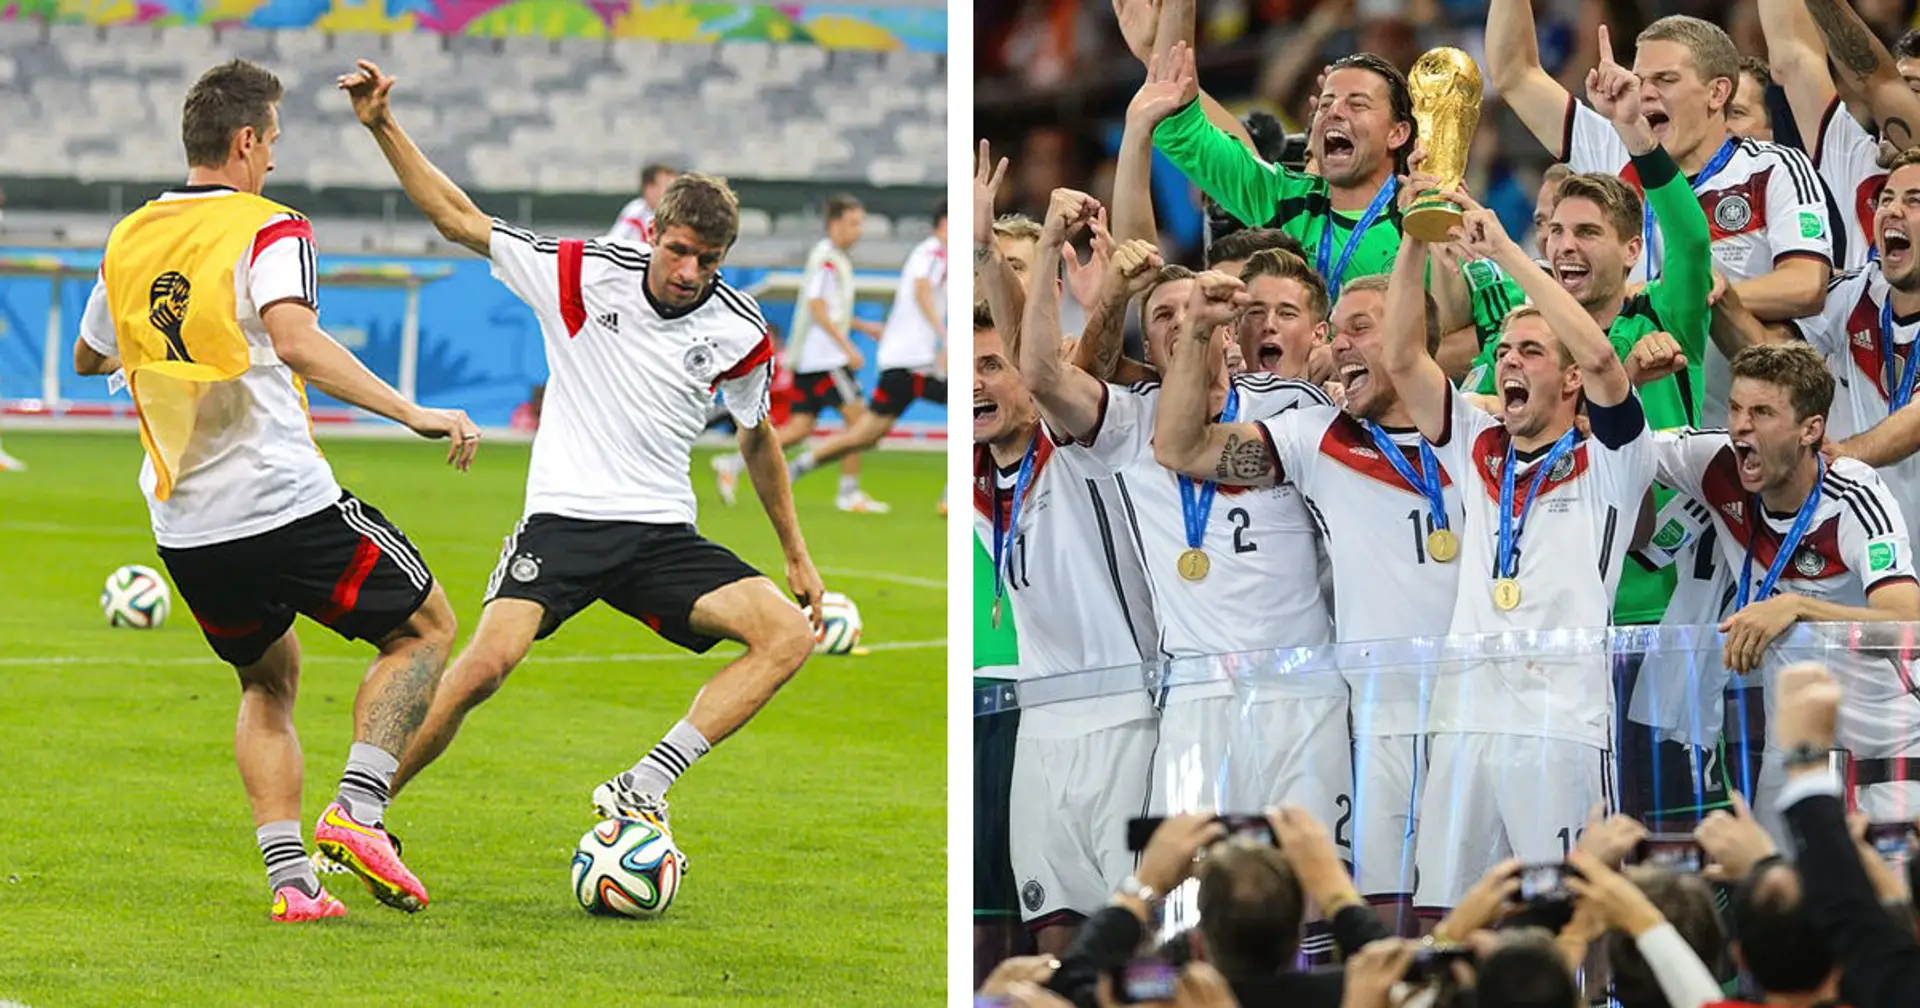 "Es war kurz vor einer Schlägerei": Als zwei Ex-Bayern-Profis vor der WM-2014 aneinandergerieten